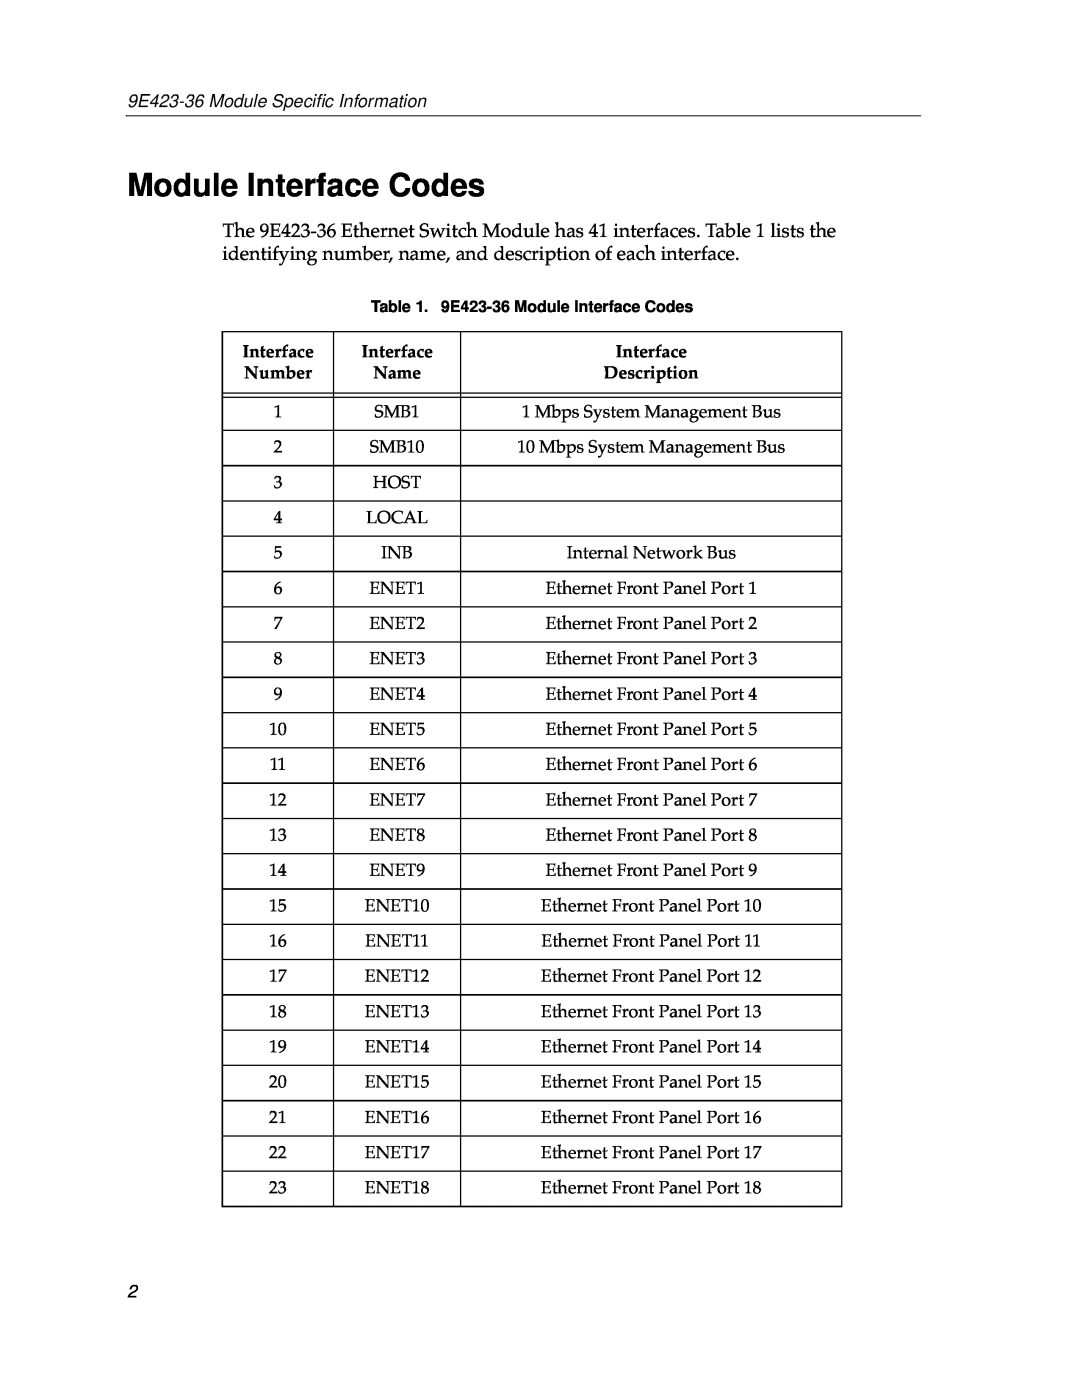 Cabletron Systems appendix Module Interface Codes, 9E423-36 Module Speciﬁc Information, Number, Name, Description 